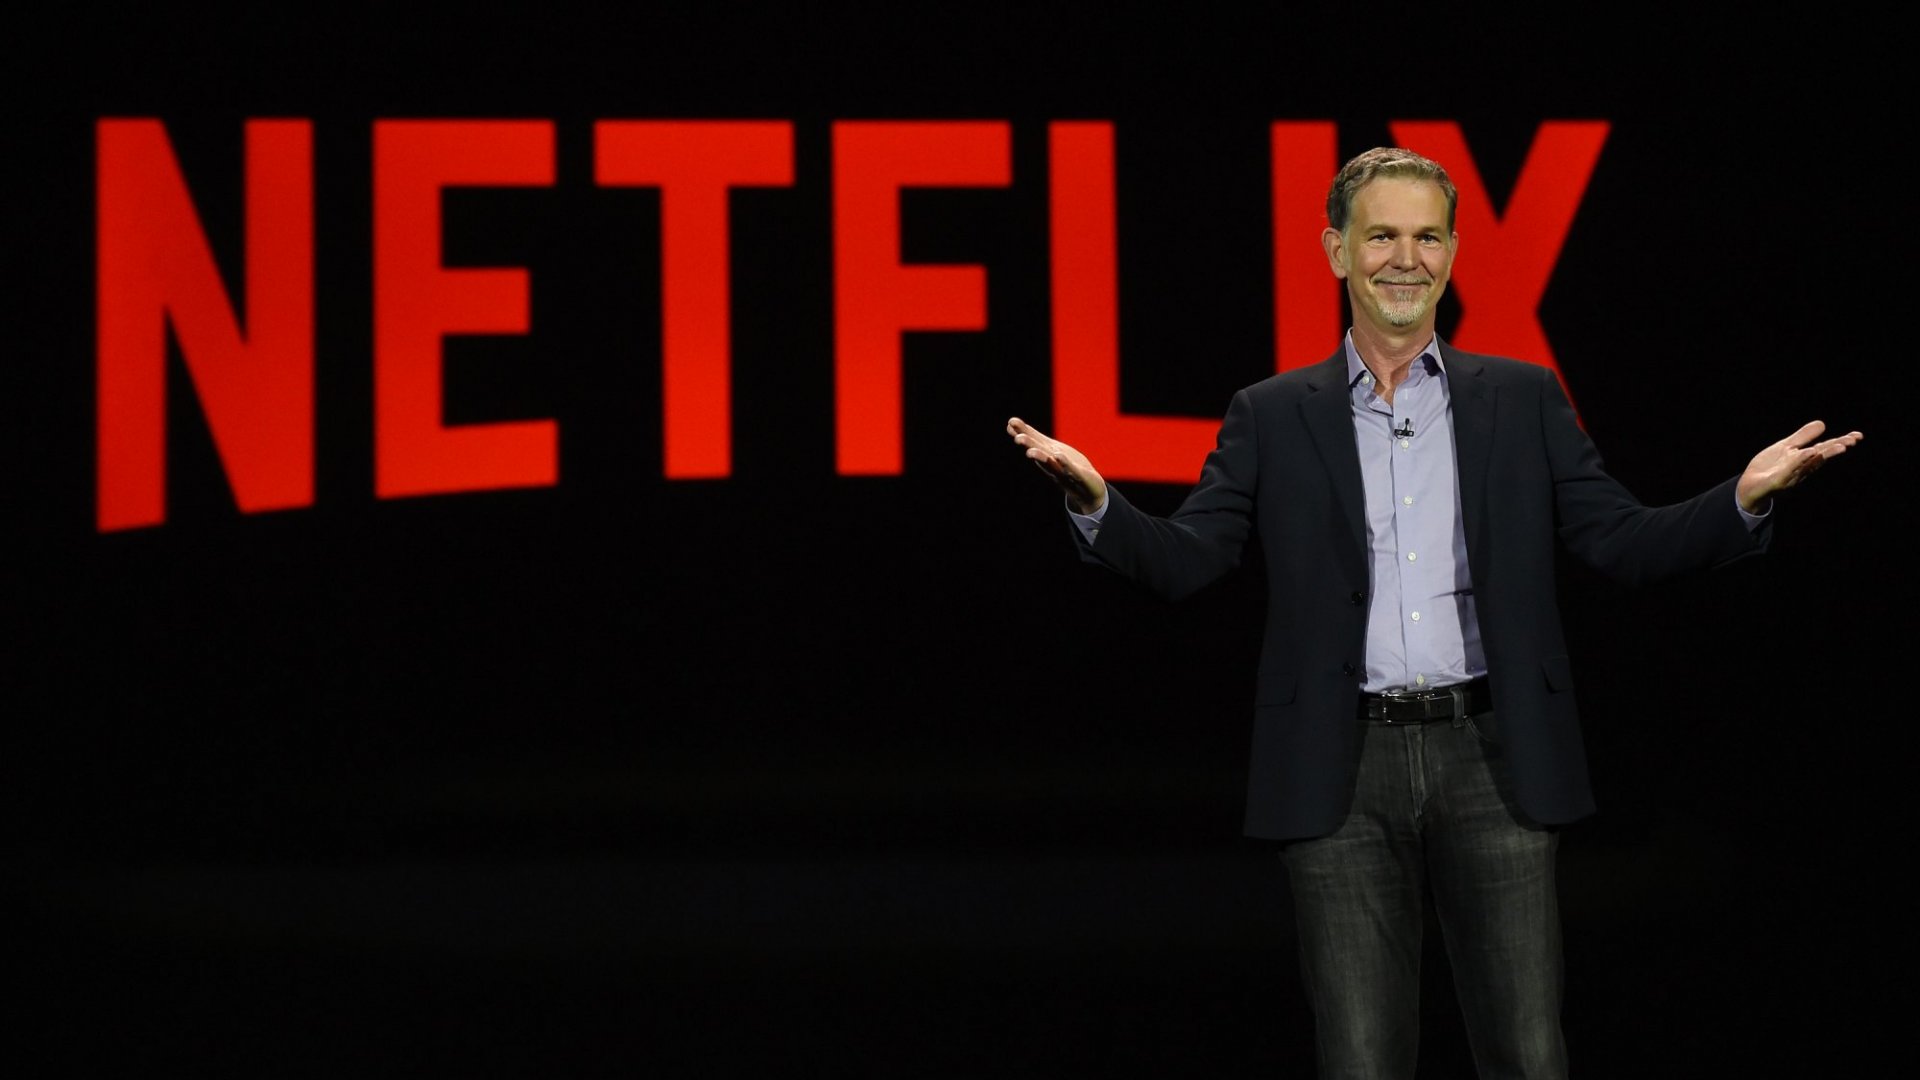 Reed Hastings odchází z vedení Netflixu. Firma má přes 230 milionů předplatitelů